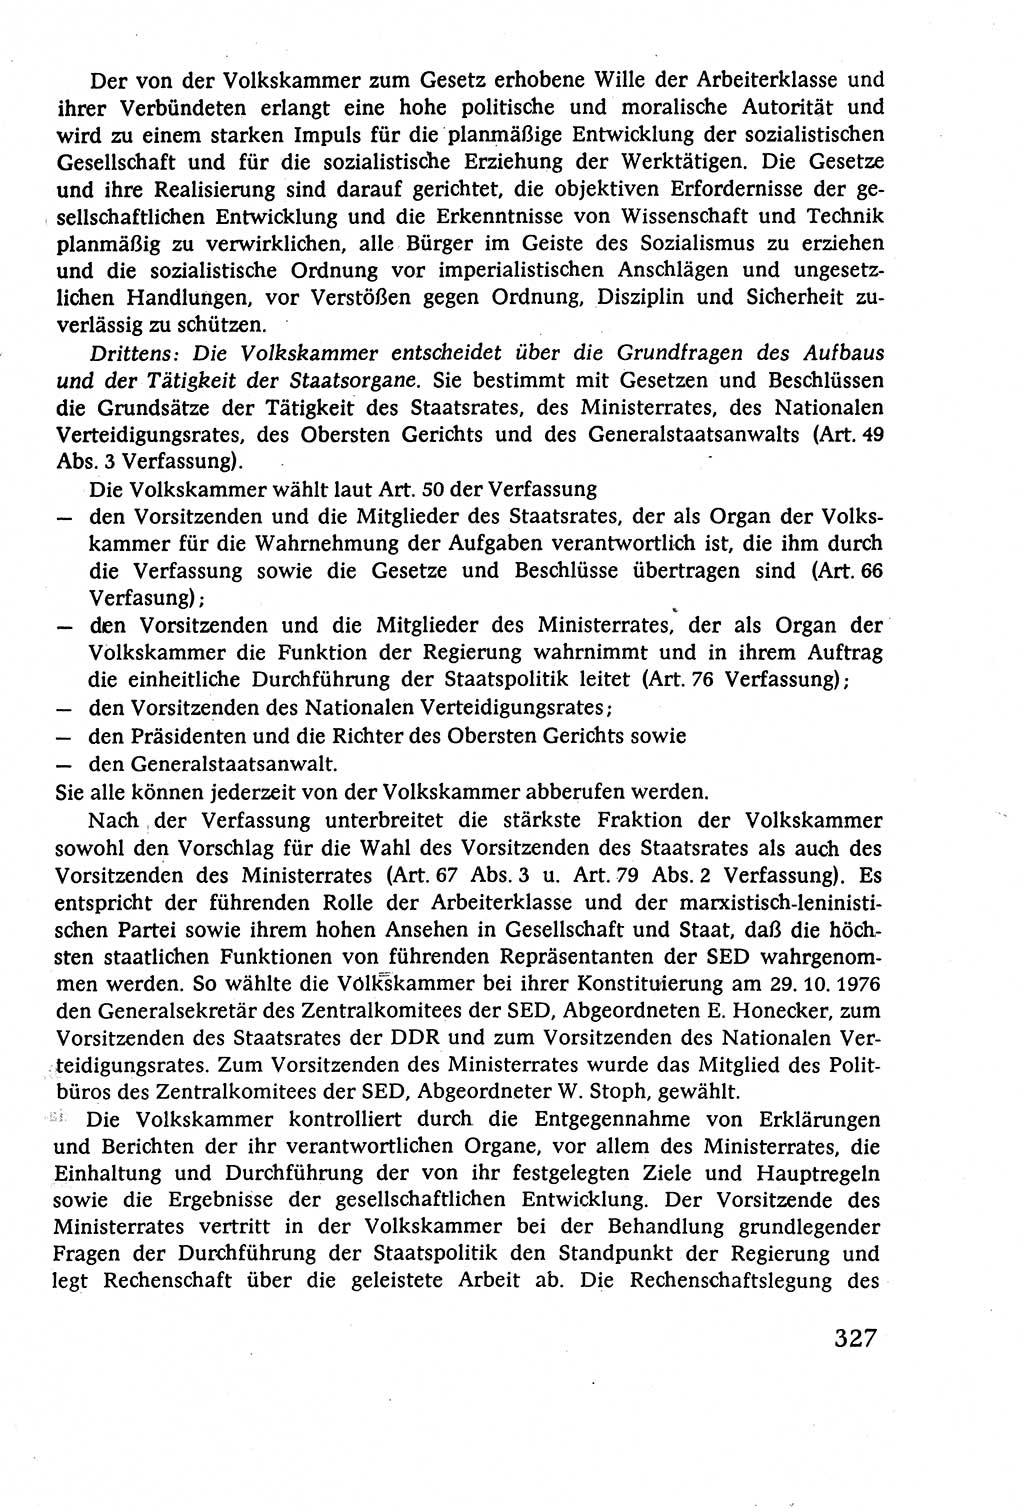 Staatsrecht der DDR (Deutsche Demokratische Republik), Lehrbuch 1977, Seite 327 (St.-R. DDR Lb. 1977, S. 327)